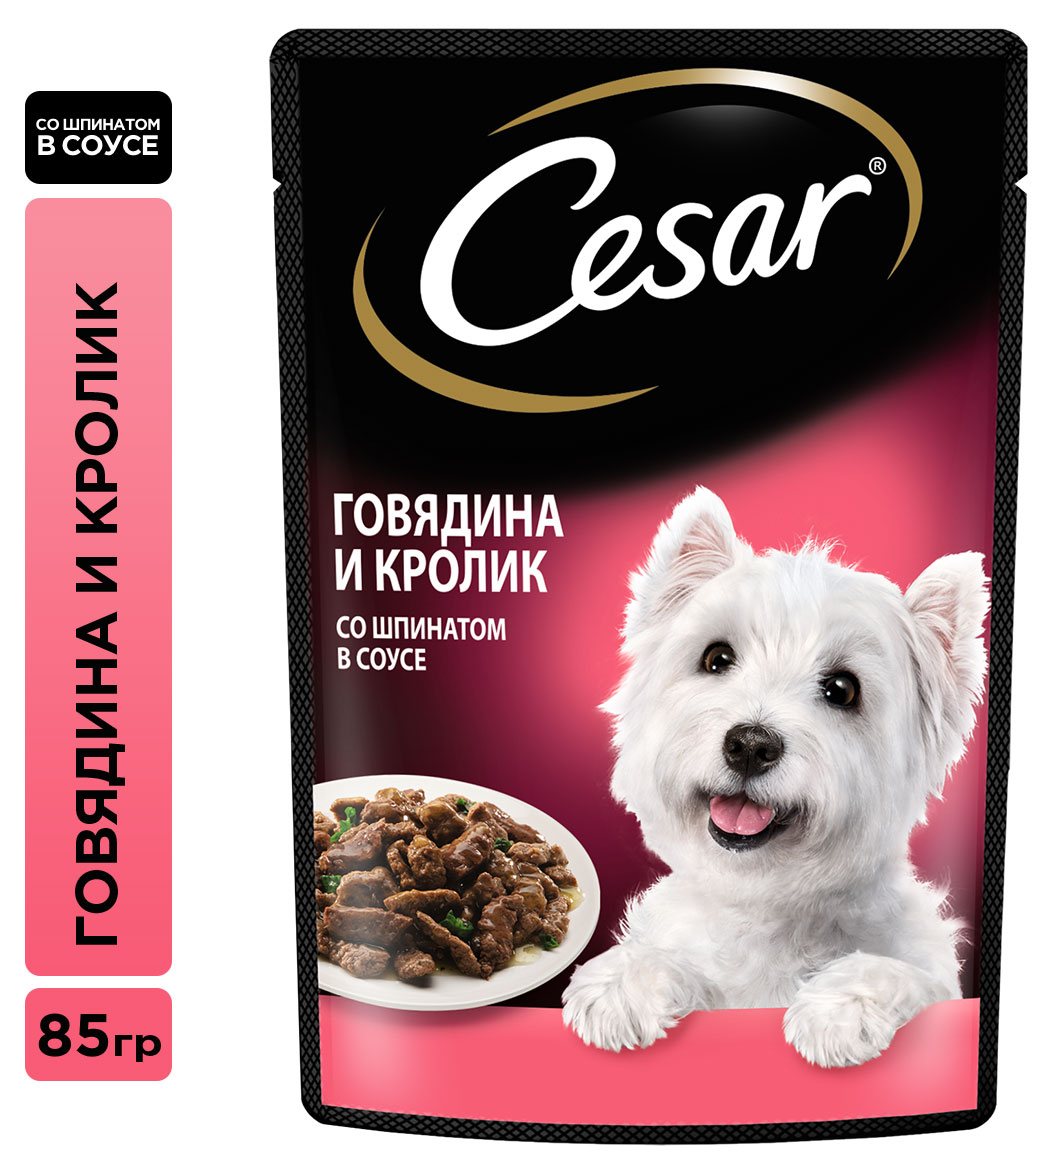 Cesar | Влажный корм для собак Cesar с говядиной кроликом и шпинатом в соусе, 85 г